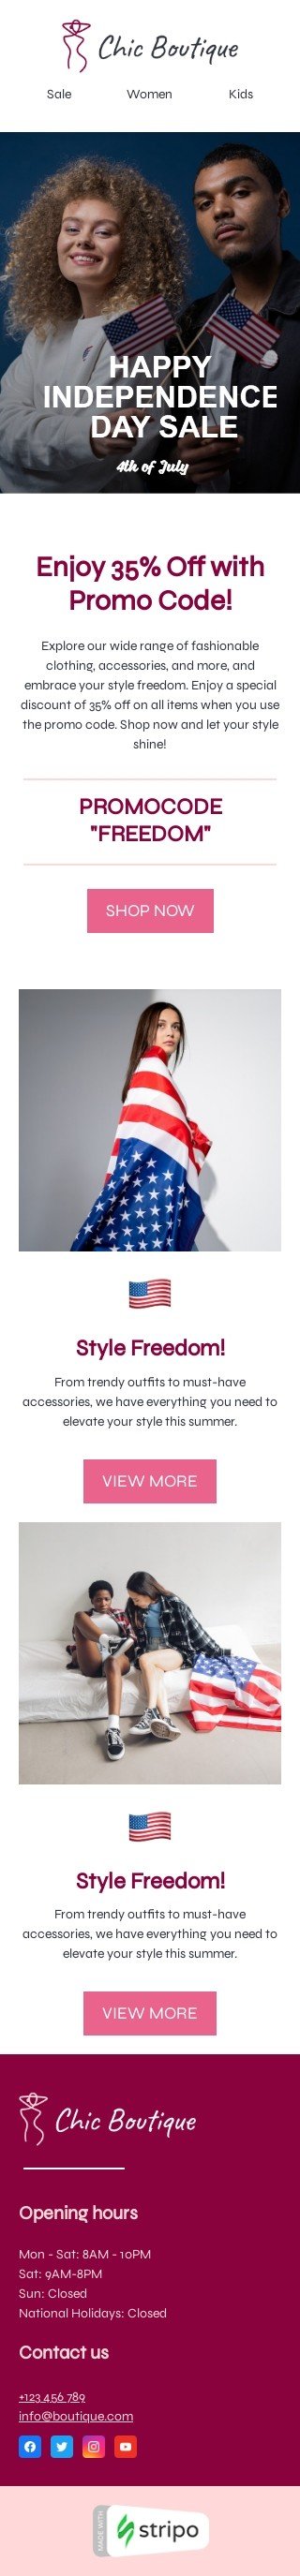 Шаблон письма к празднику День независимости «Свобода стиля» для индустрии «Мода» мобильный вид